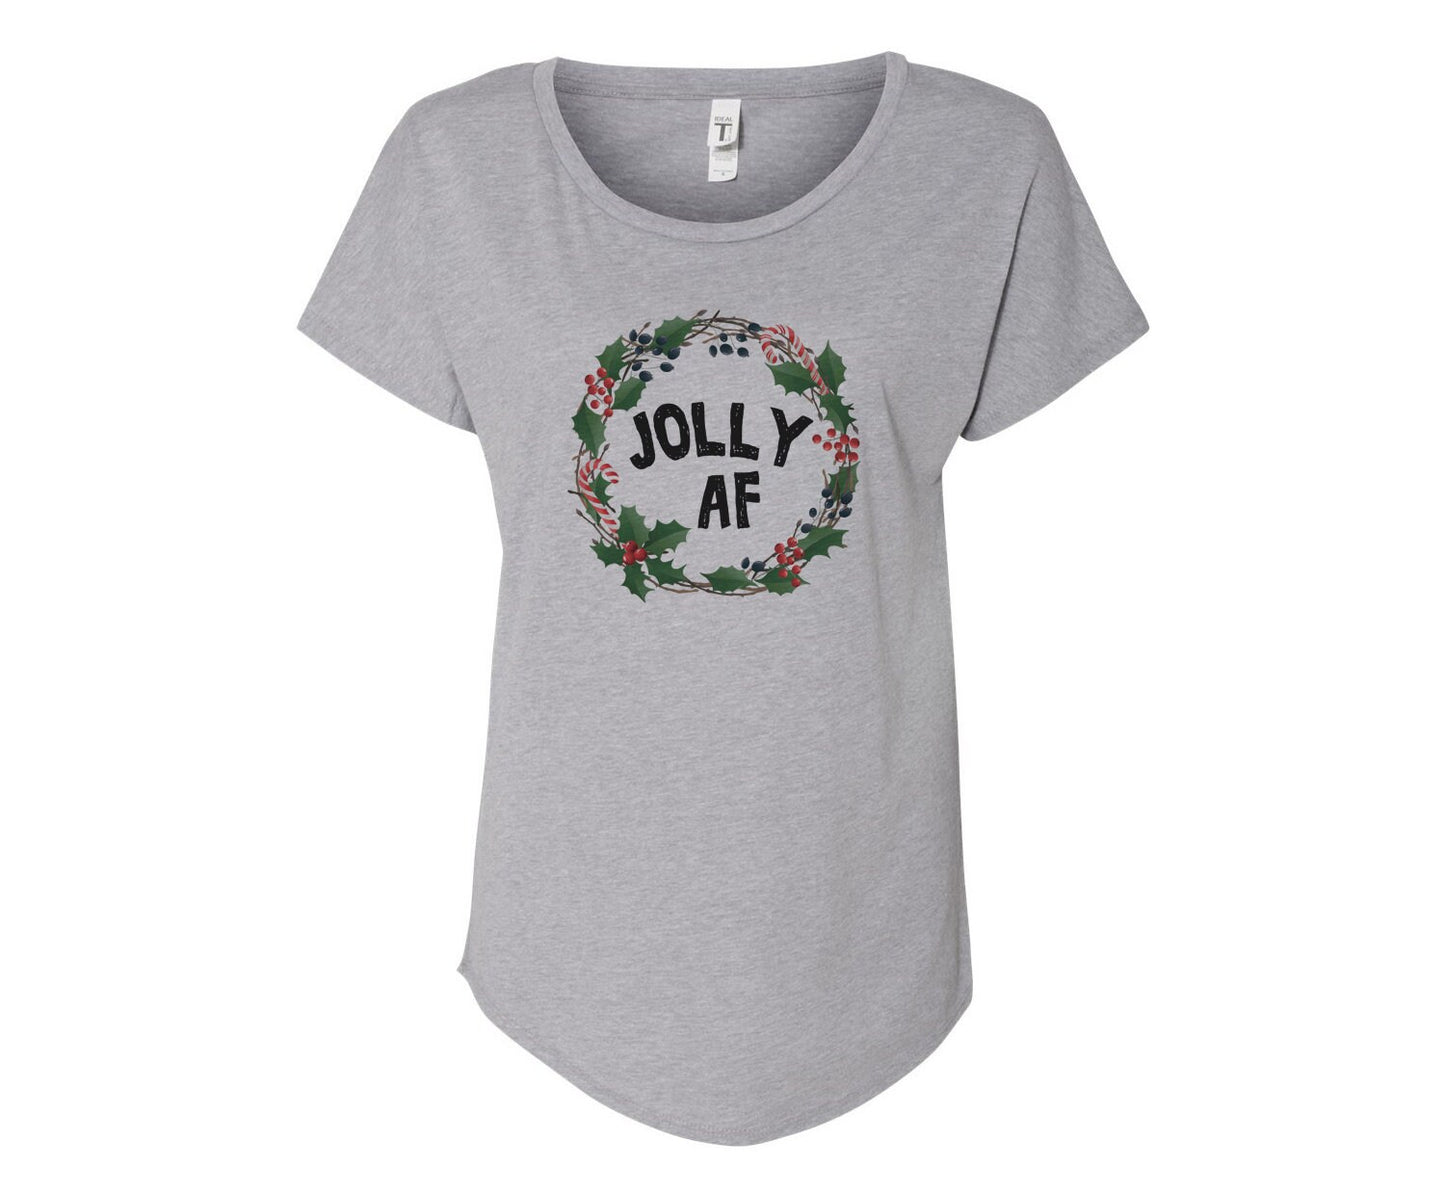 Jolly AF Ladies Tee Shirt - In Grey & White